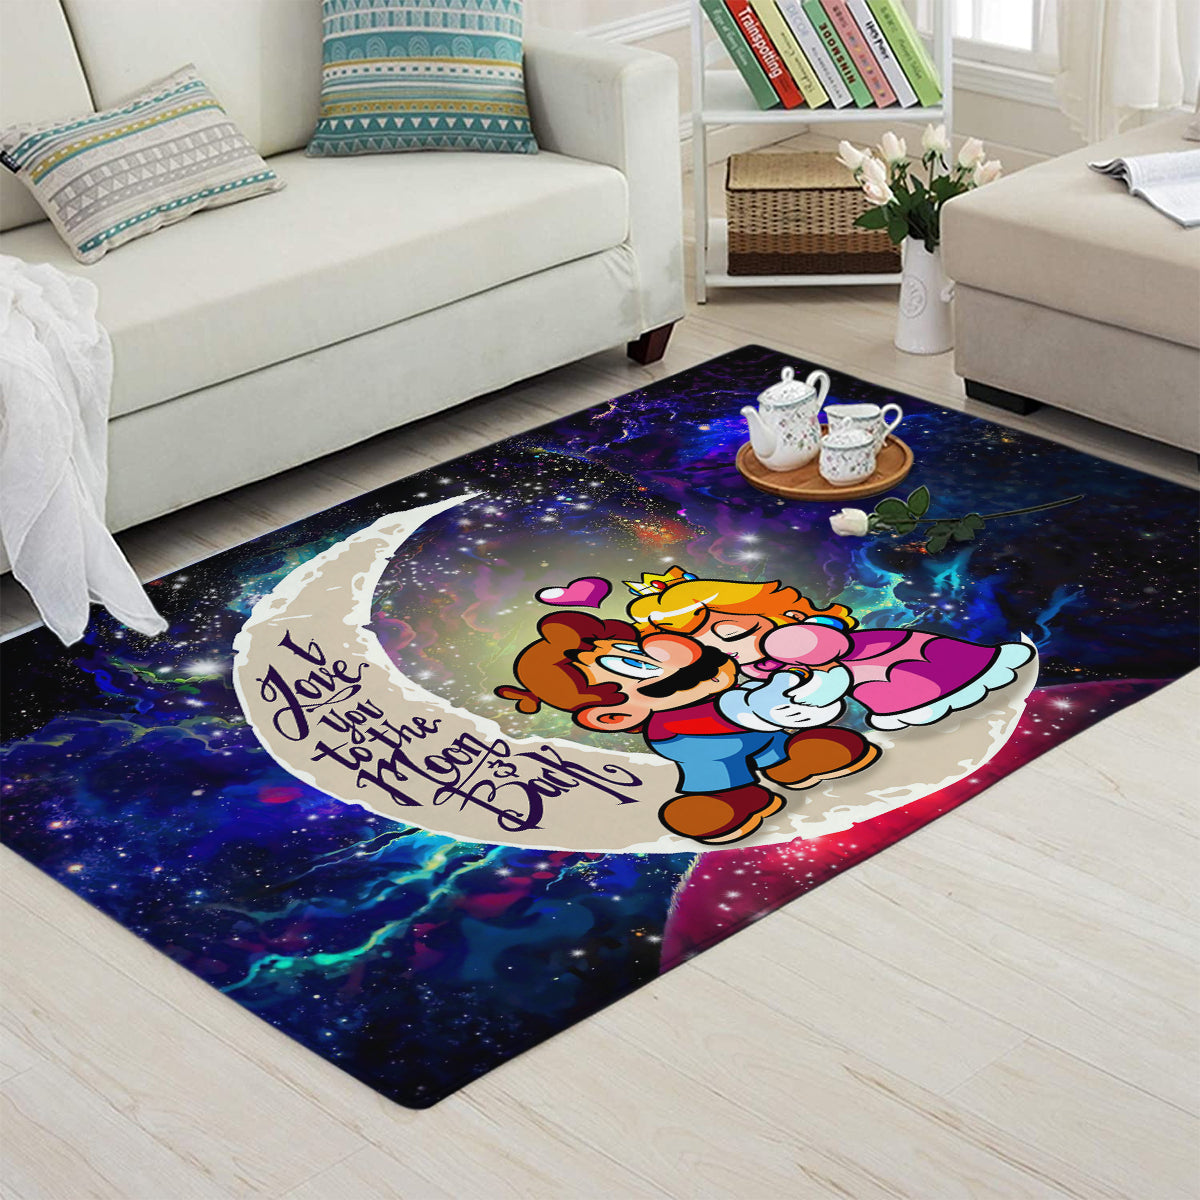 Mario Couple Love You To The Moon Galaxy Carpet Rug Home Room Decor